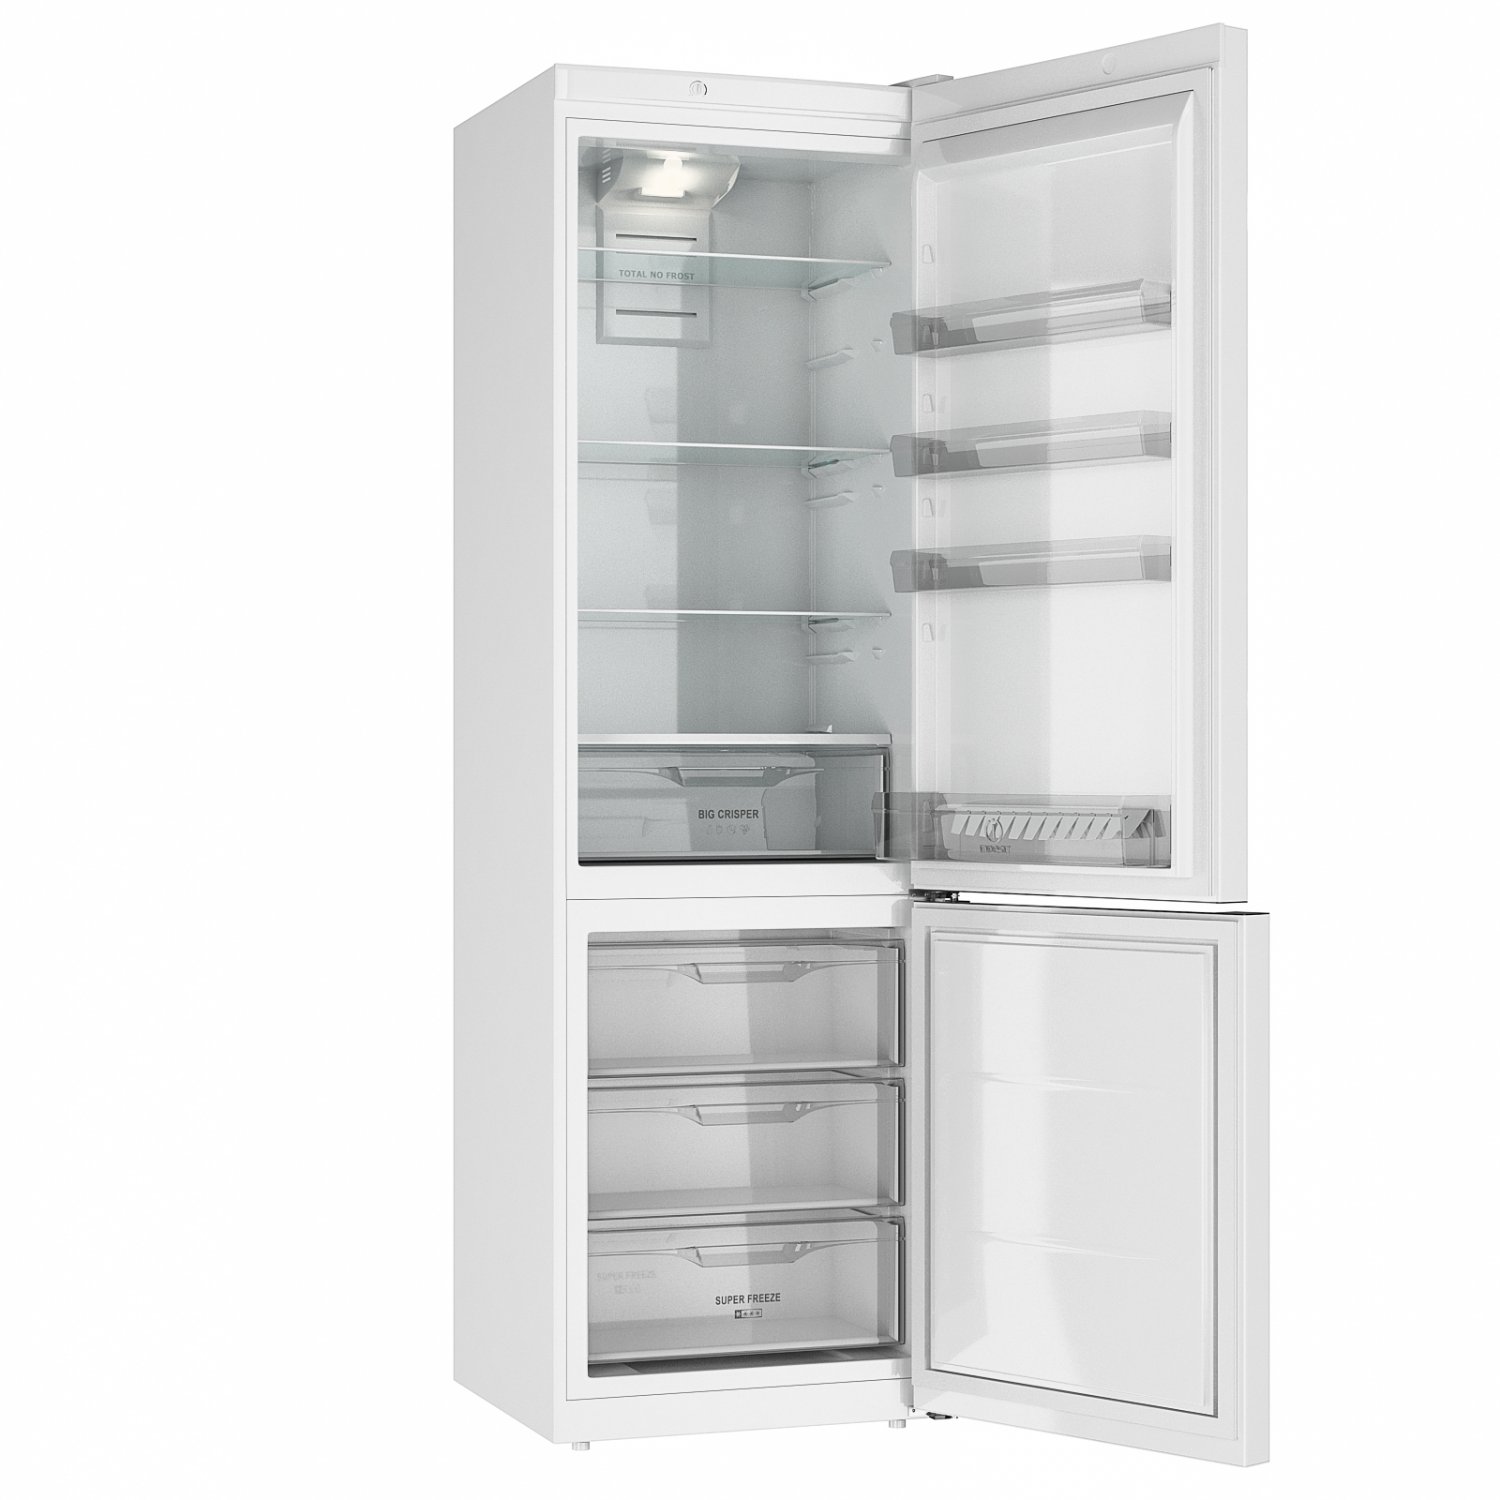 Индезит 5200 w. Индезит 5180 холодильник. Холодильник Индезит ITF 120 W. Холодильник Индезит 5180 s.